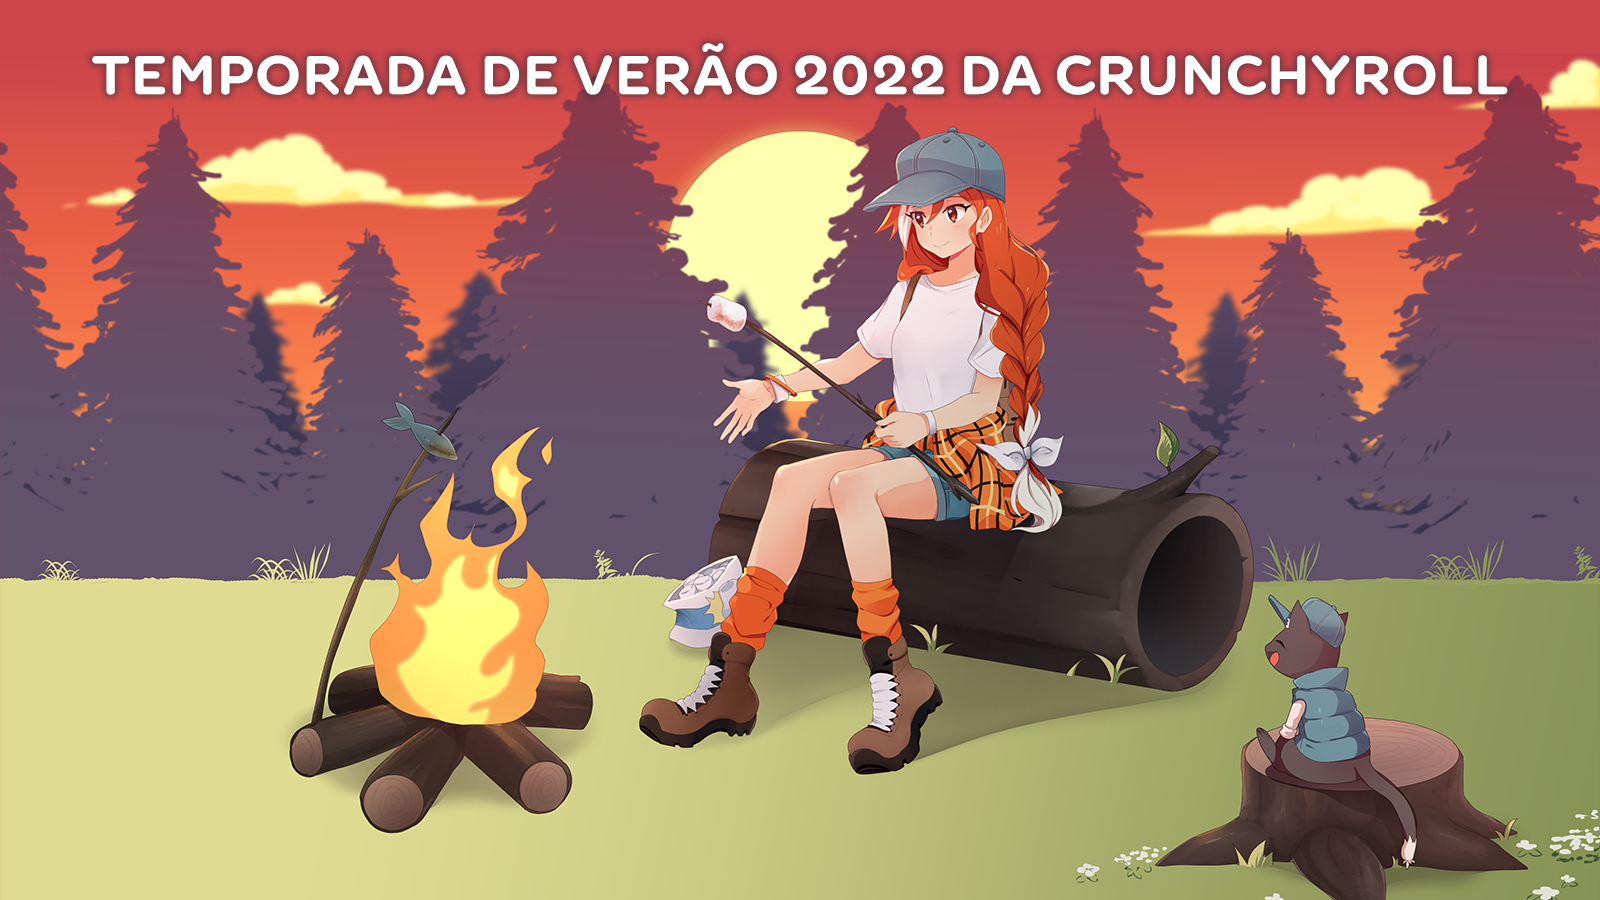 Temporada de Verão de 2022 Crunchyroll